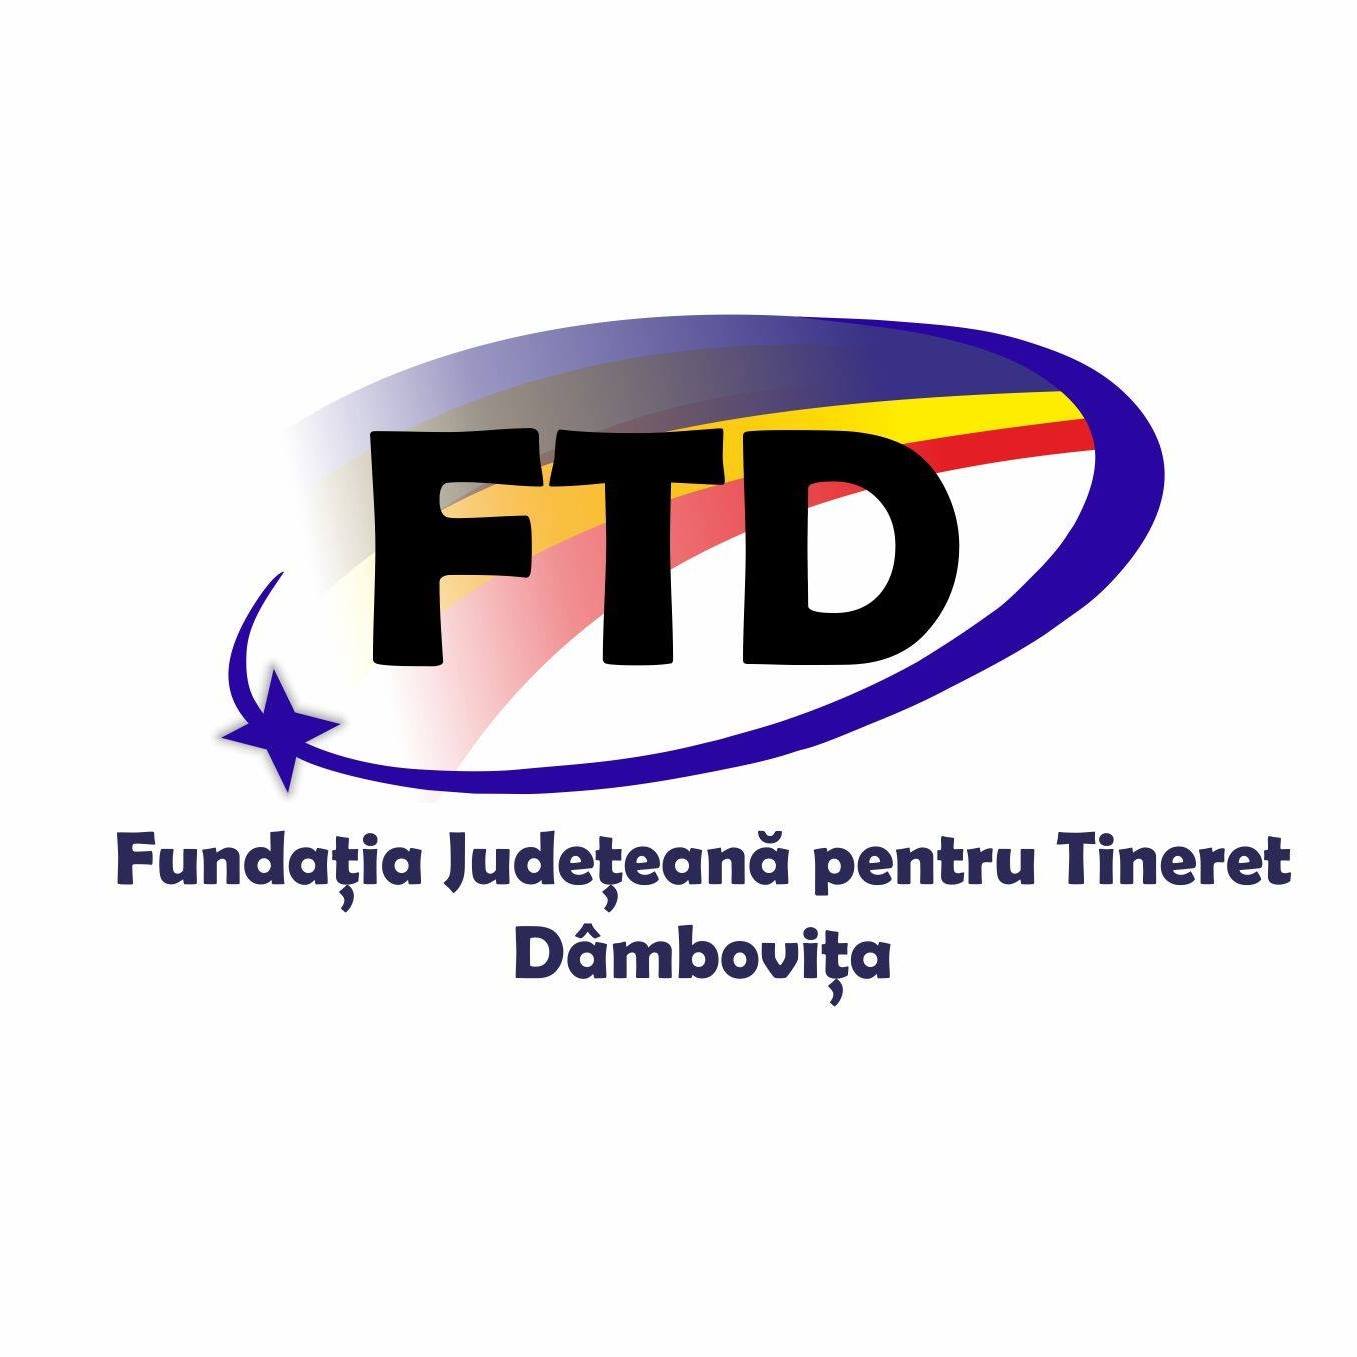 Fundația Județeană pentru Tineret Dâmbovița logo